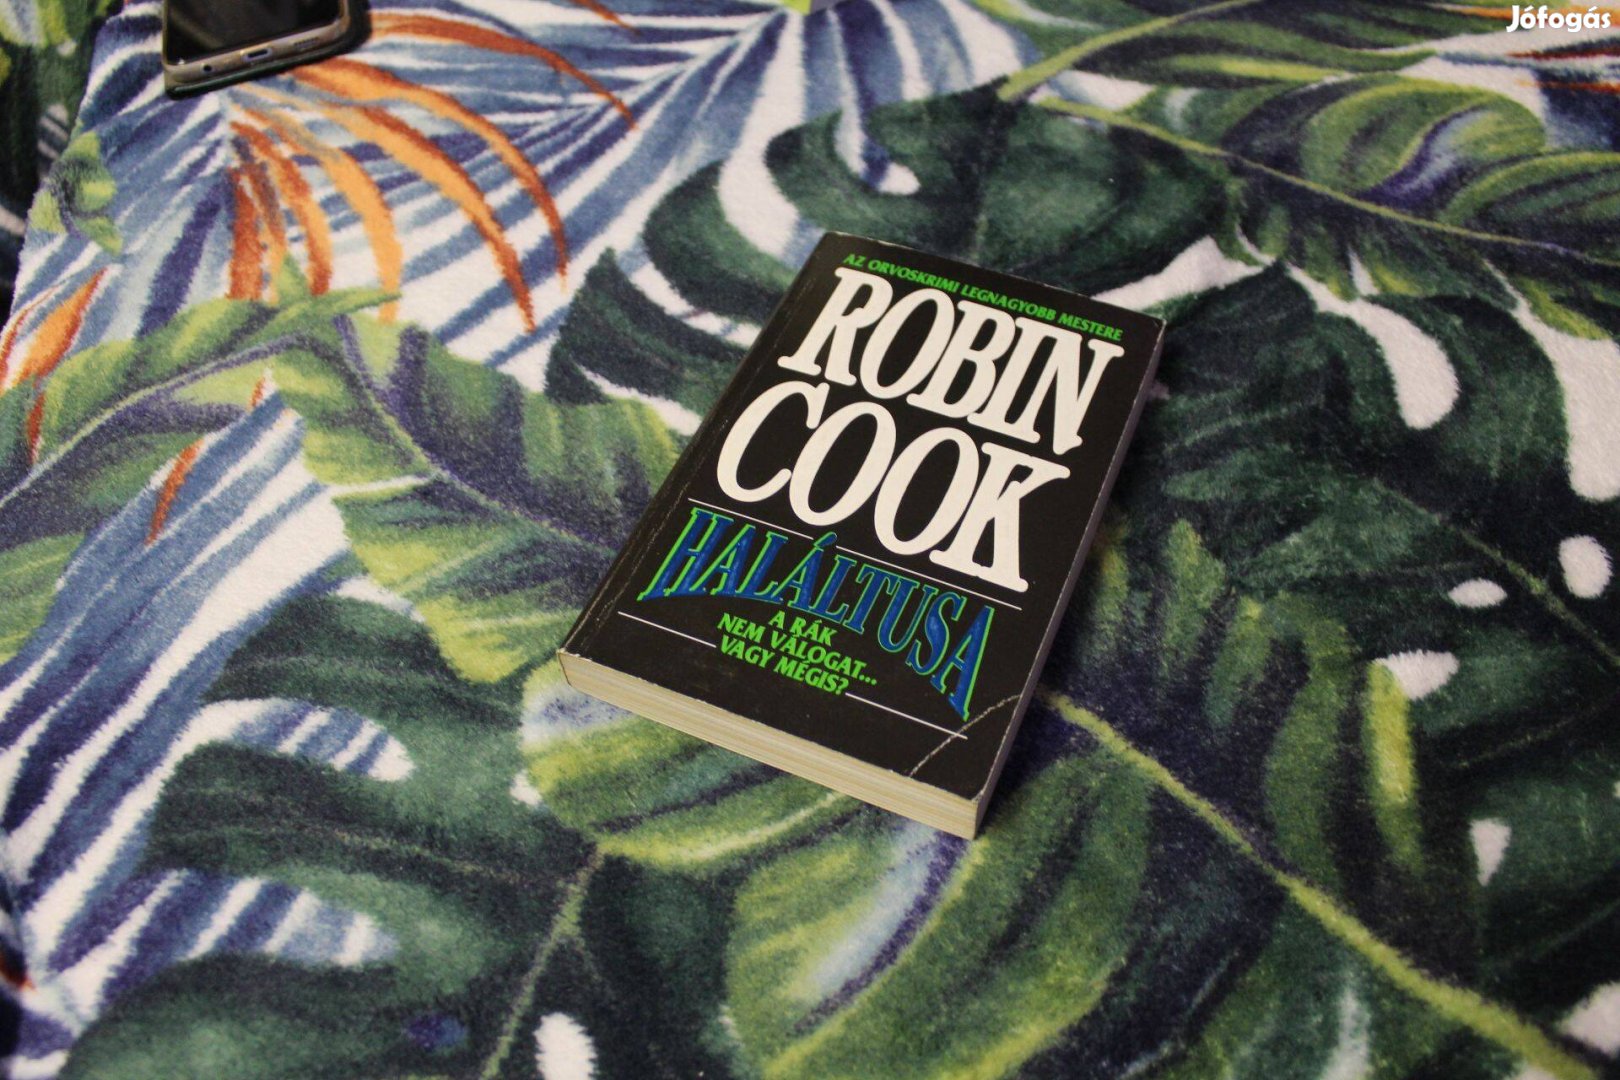 Robin Cook: Halaltusa